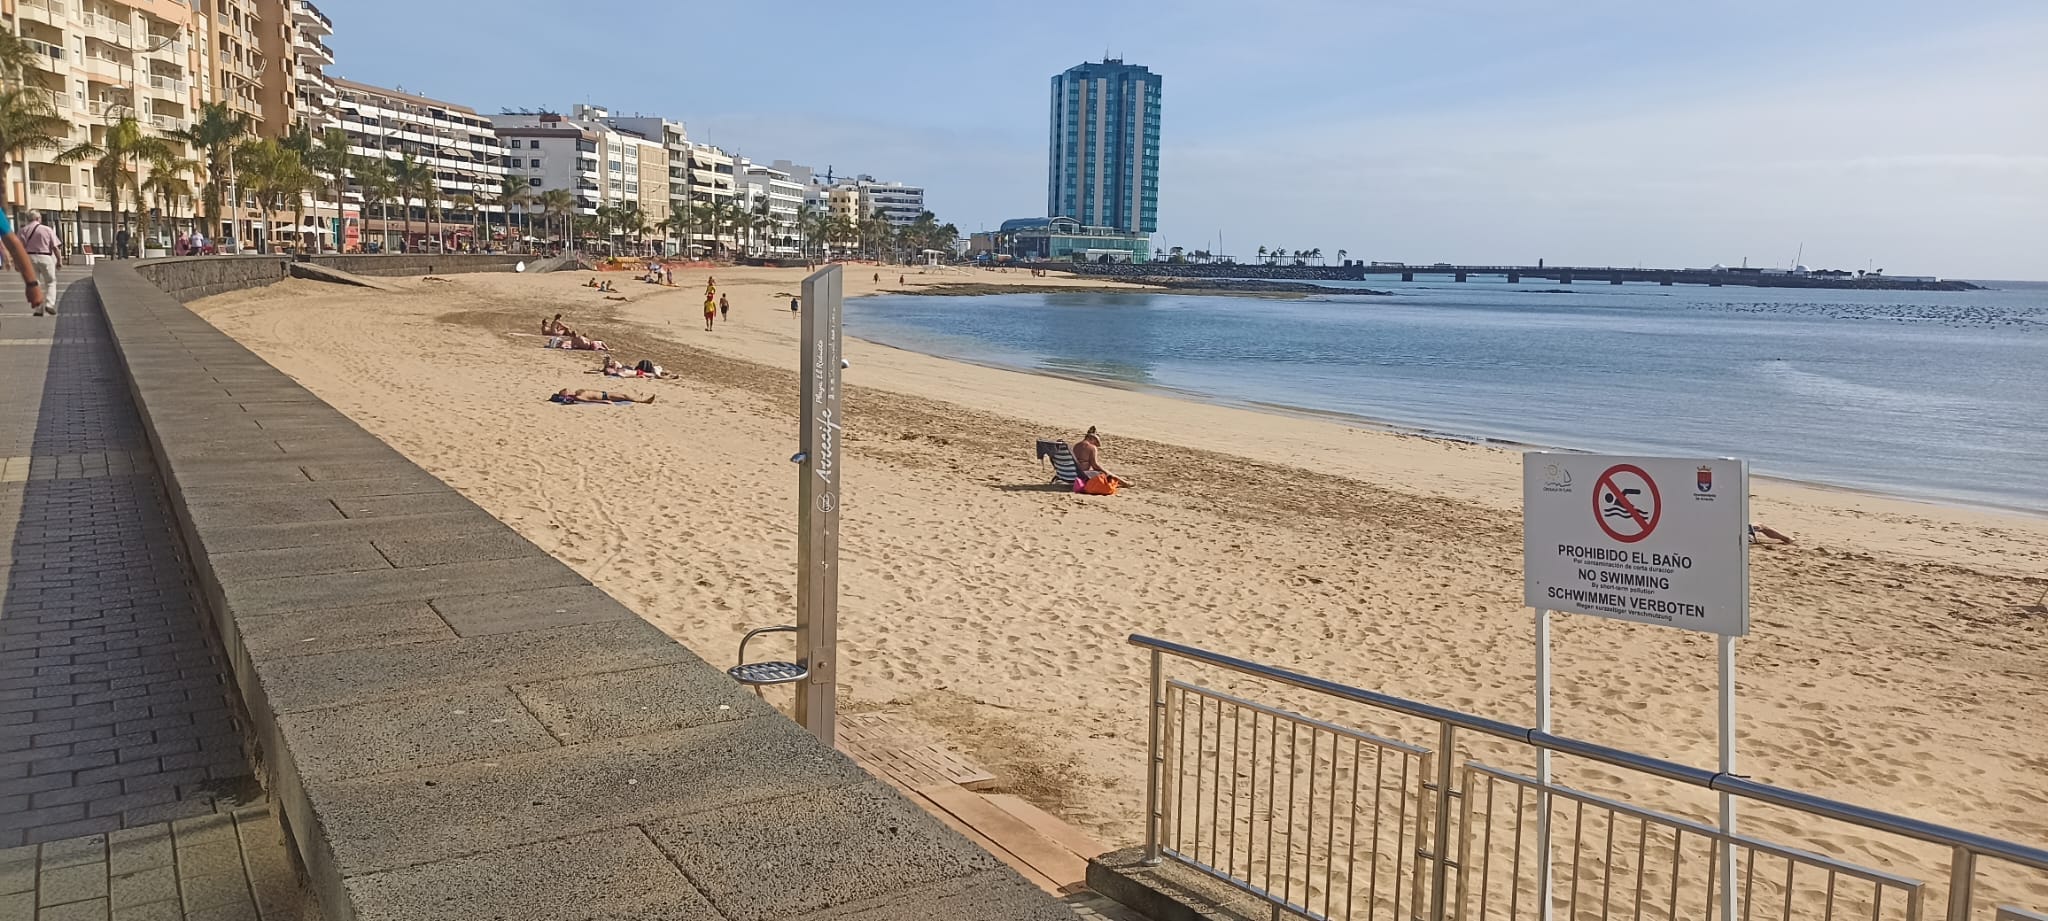 Imagen de este miércoles de la Playa de El Reducto. El Ayuntamiento prohíbe el baño de manera temporal